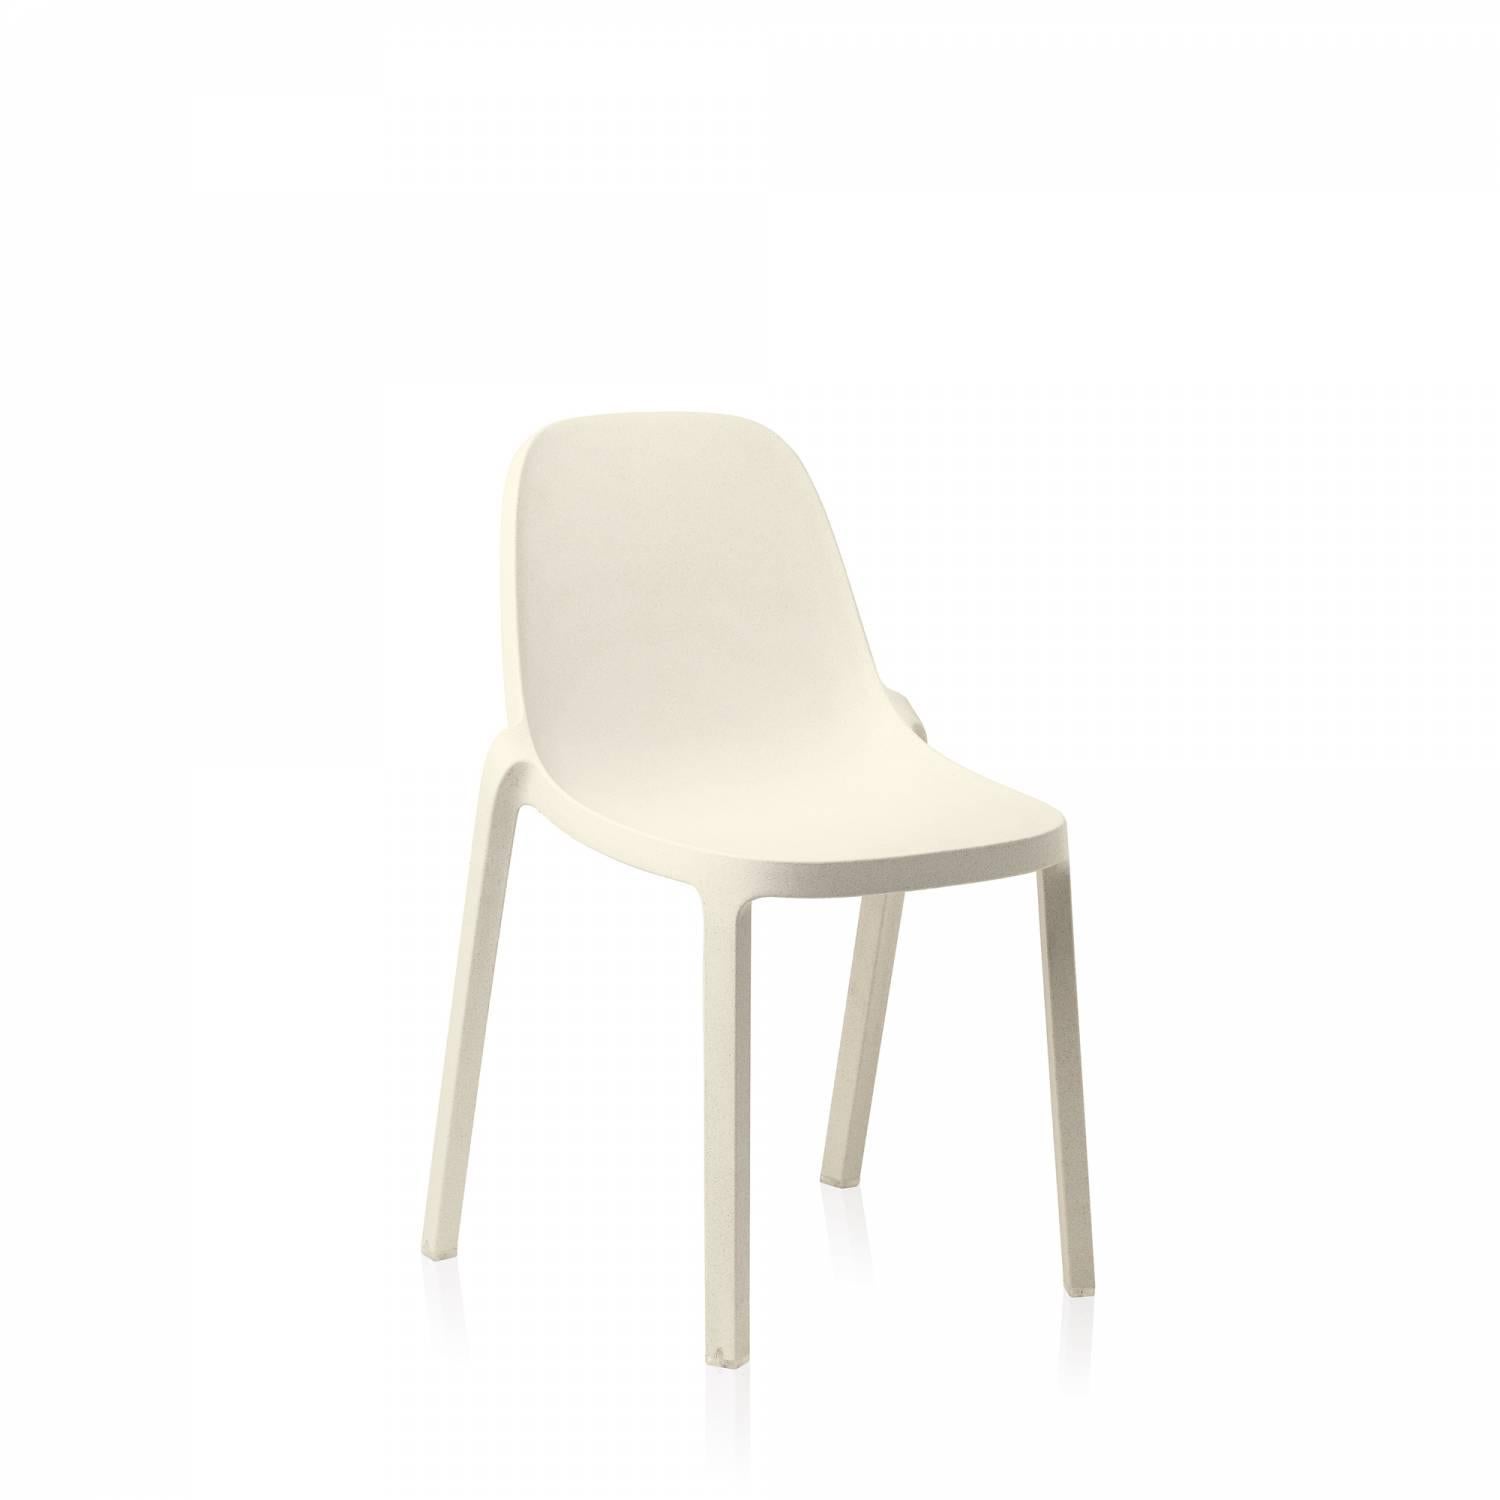 Philippe Starck und Emeco haben sich zusammengetan, um einen neuen Stuhl zu entwerfen, der wiederverwertet, wiederverwendet und recycelt werden kann - und der für eine lange Lebensdauer konzipiert ist. Der Stuhl besteht zu 75 % aus